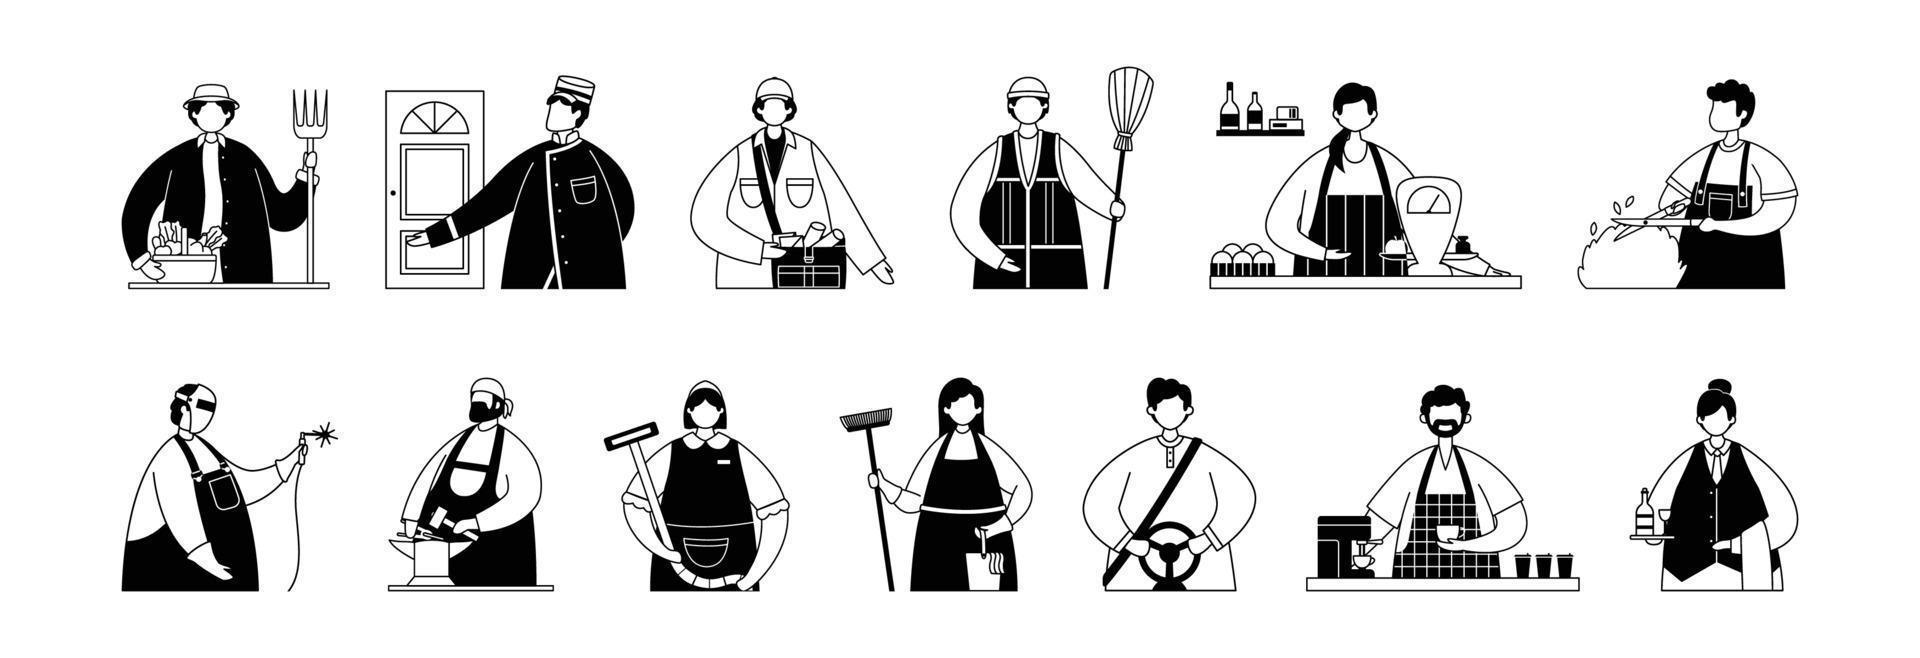 ensemble vectoriel d'illustrations de travailleurs de services professionnels et d'artisans. dessin au trait